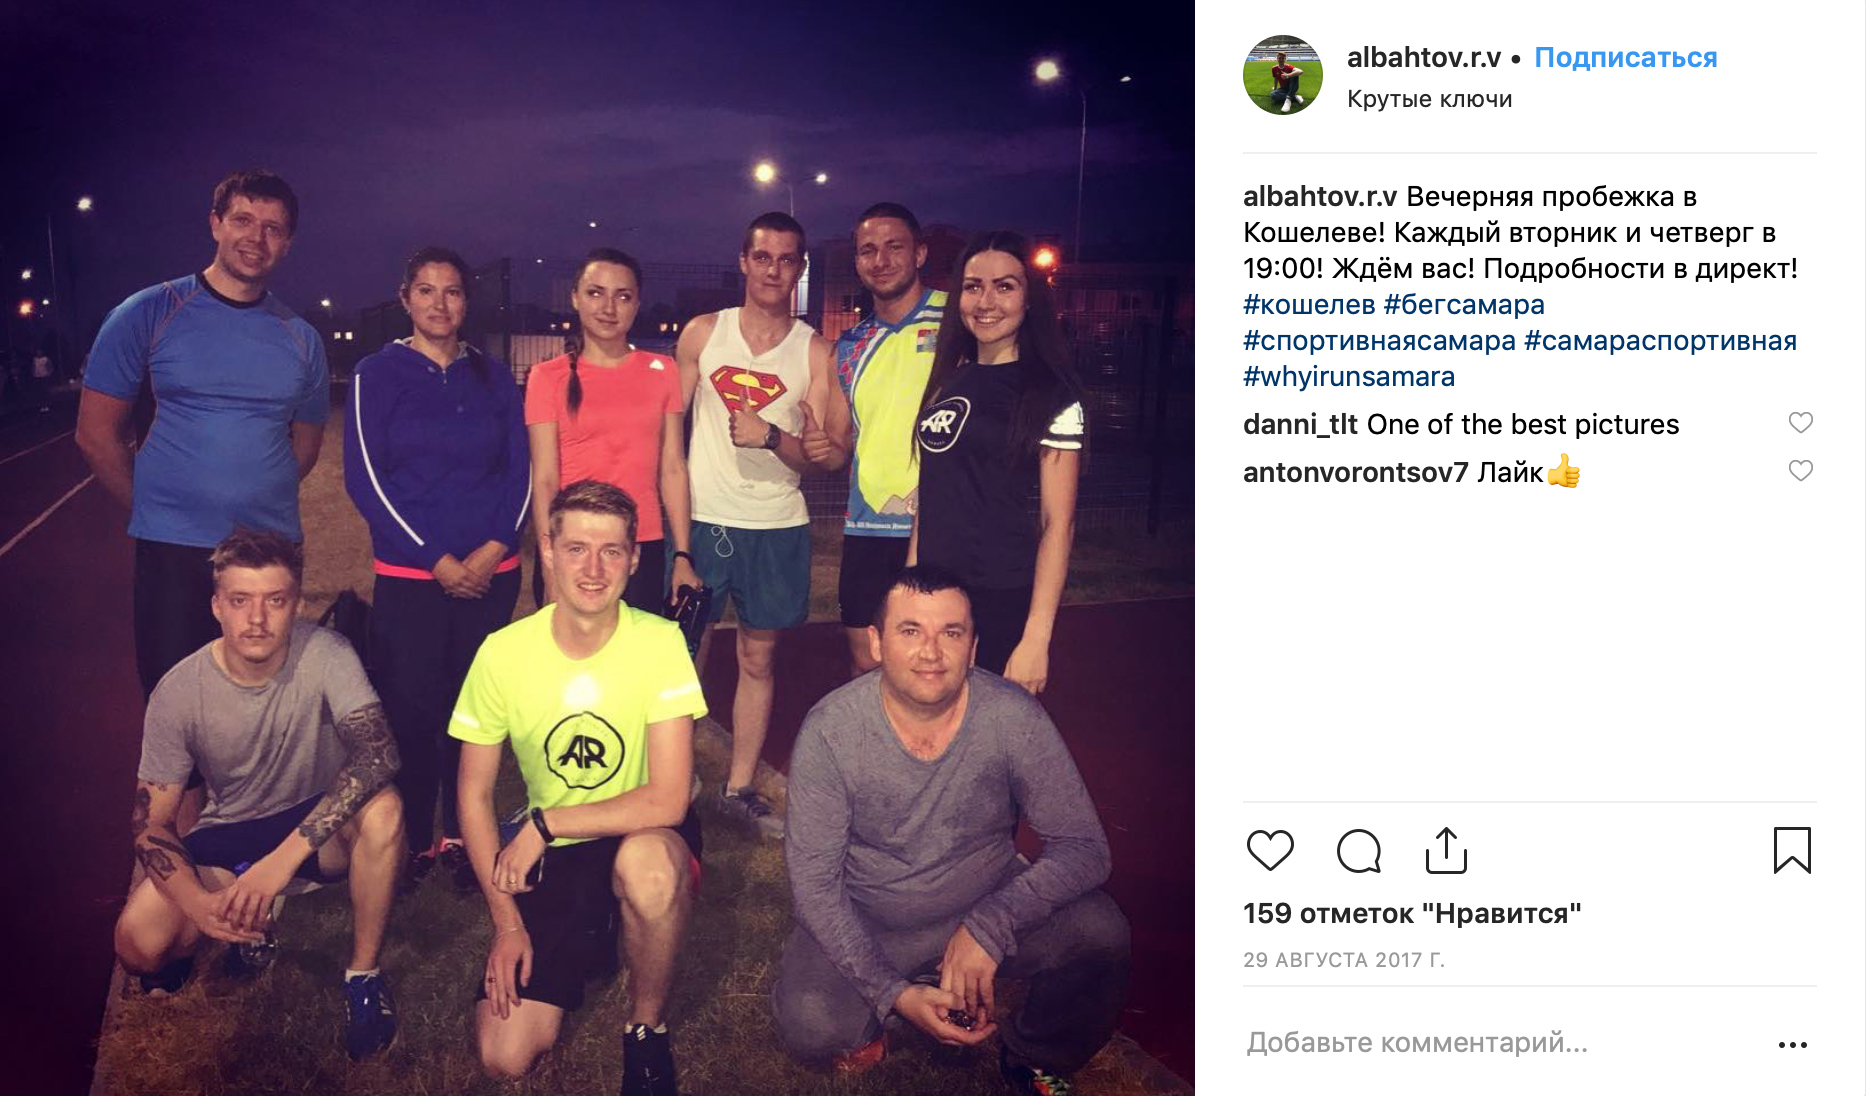 По хэштегу #бегсамара нашлась серия постов, где автор приглашает на пробежки и рассказывает о марафонах и тренировках в городе